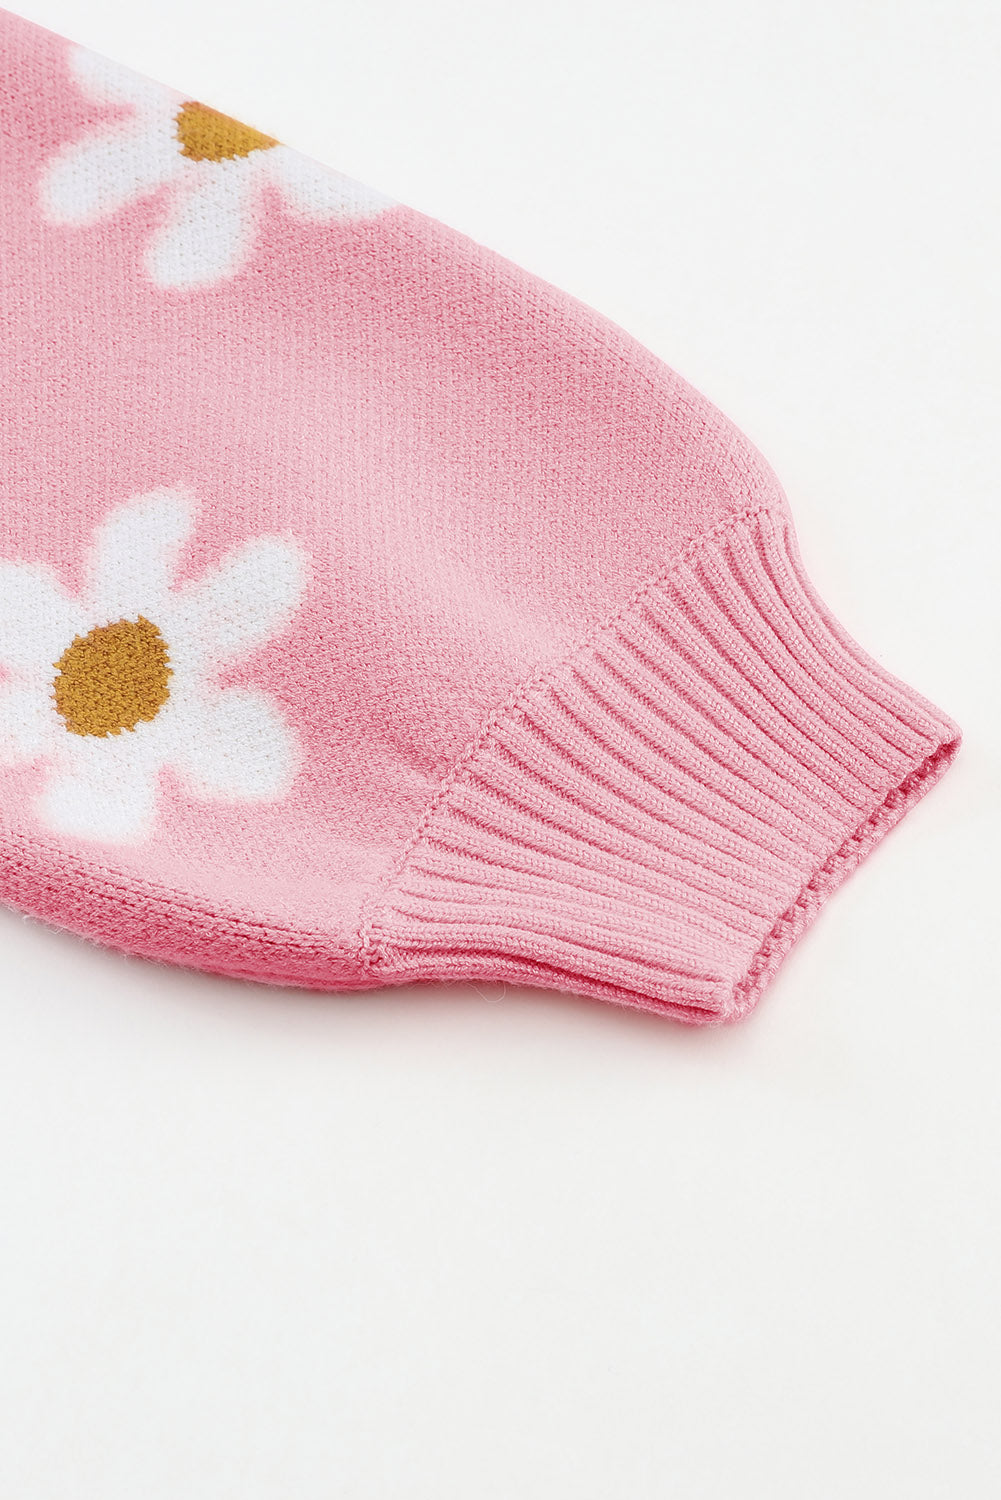 Pink Floral Pattern Drop Shoulder Sweater